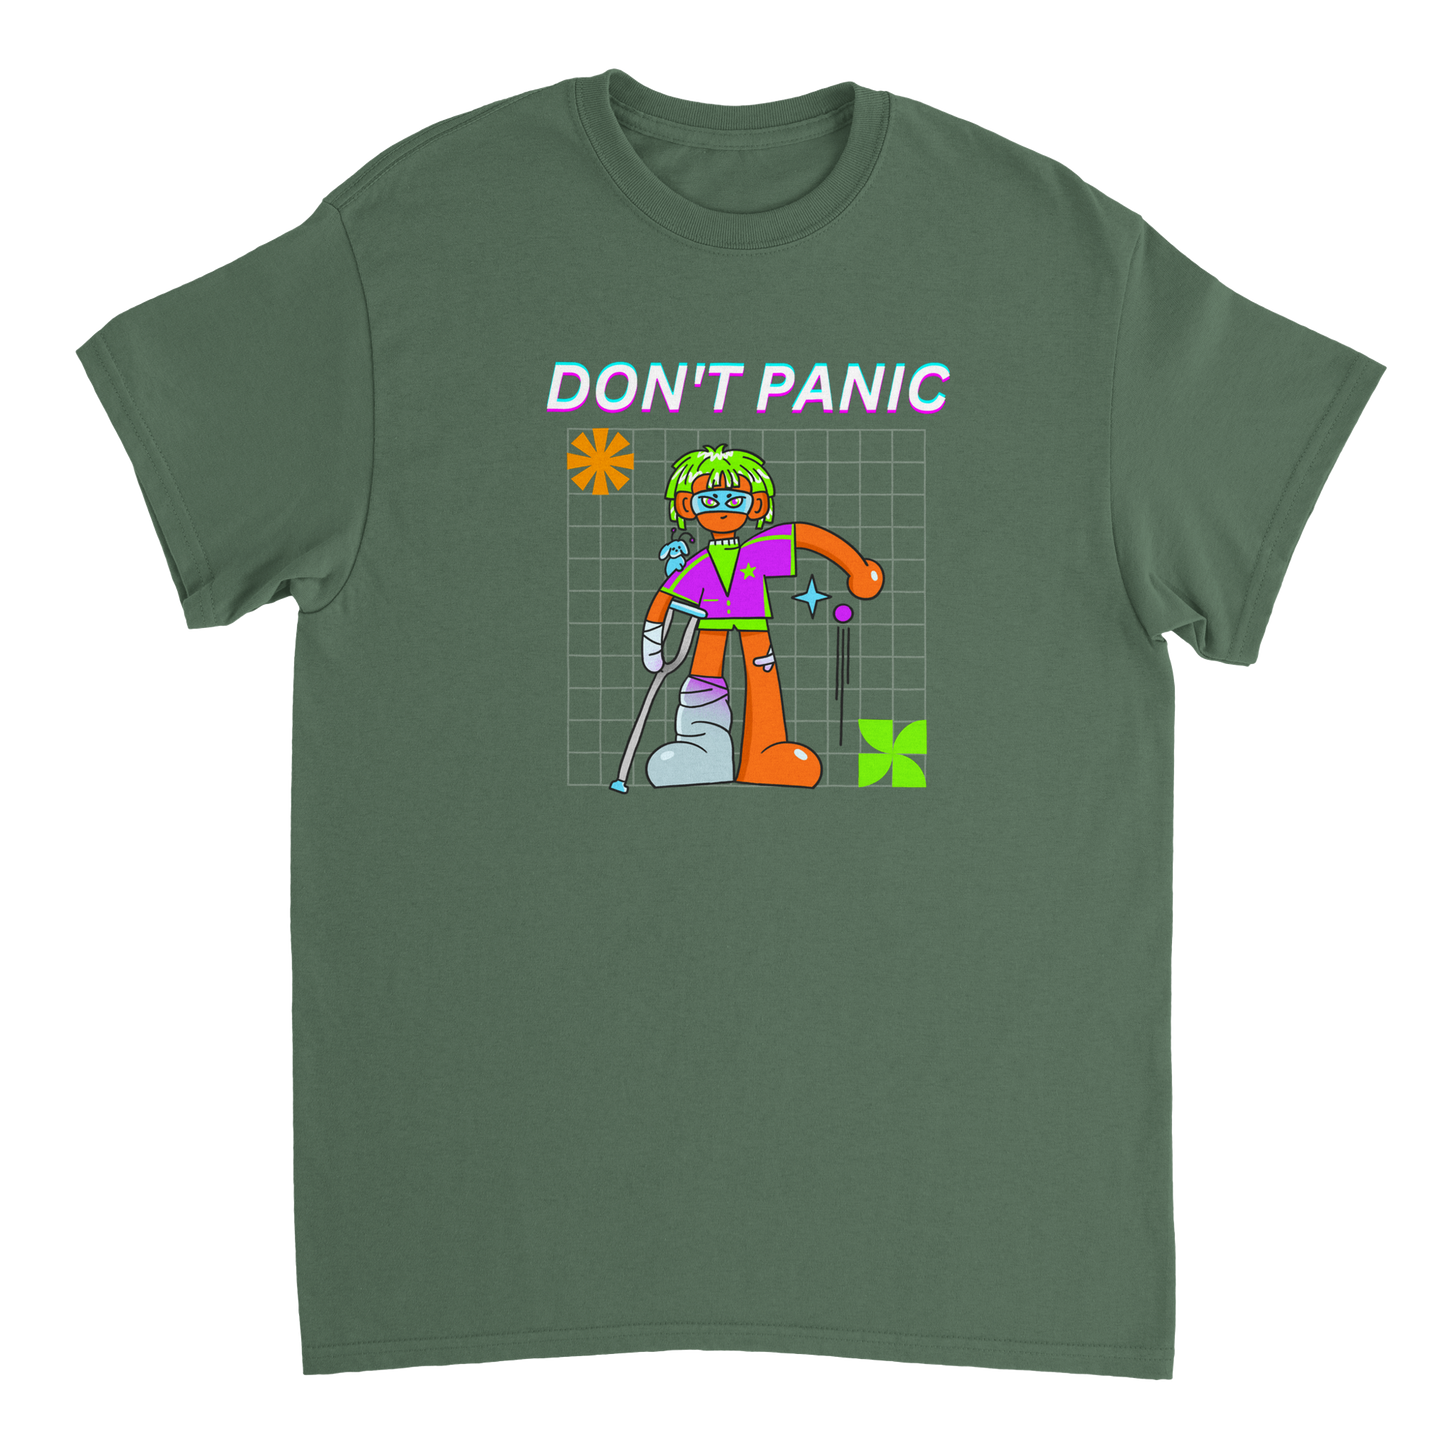 Do not panic Heavyweight Unisex Crewneck T-shirt